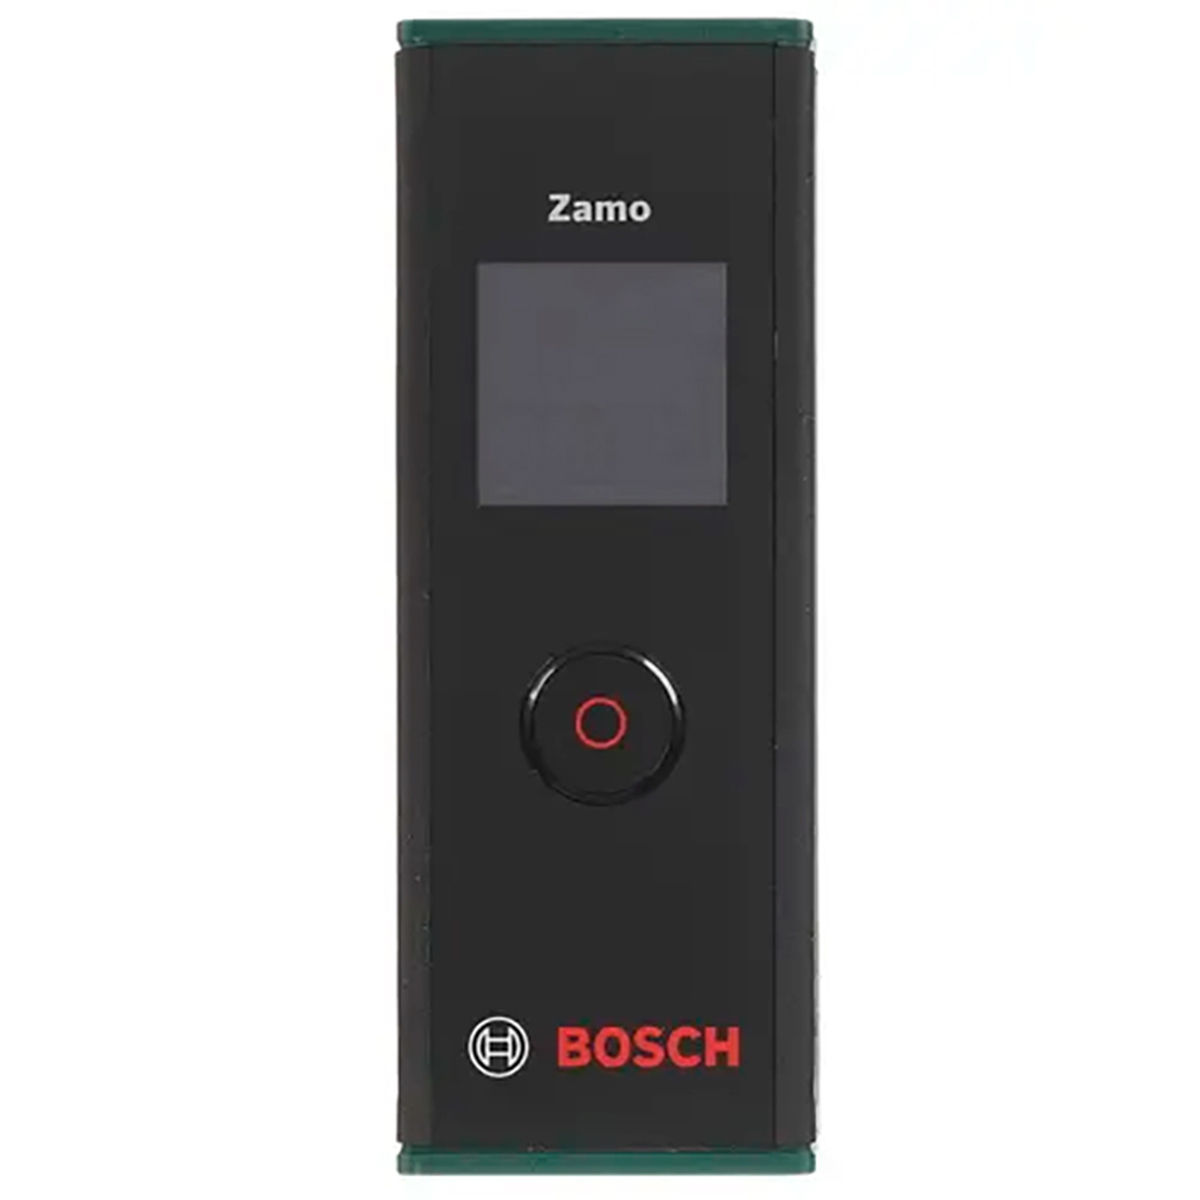 Лазерный дальномер Bosch Zamo III basic — Фото 1